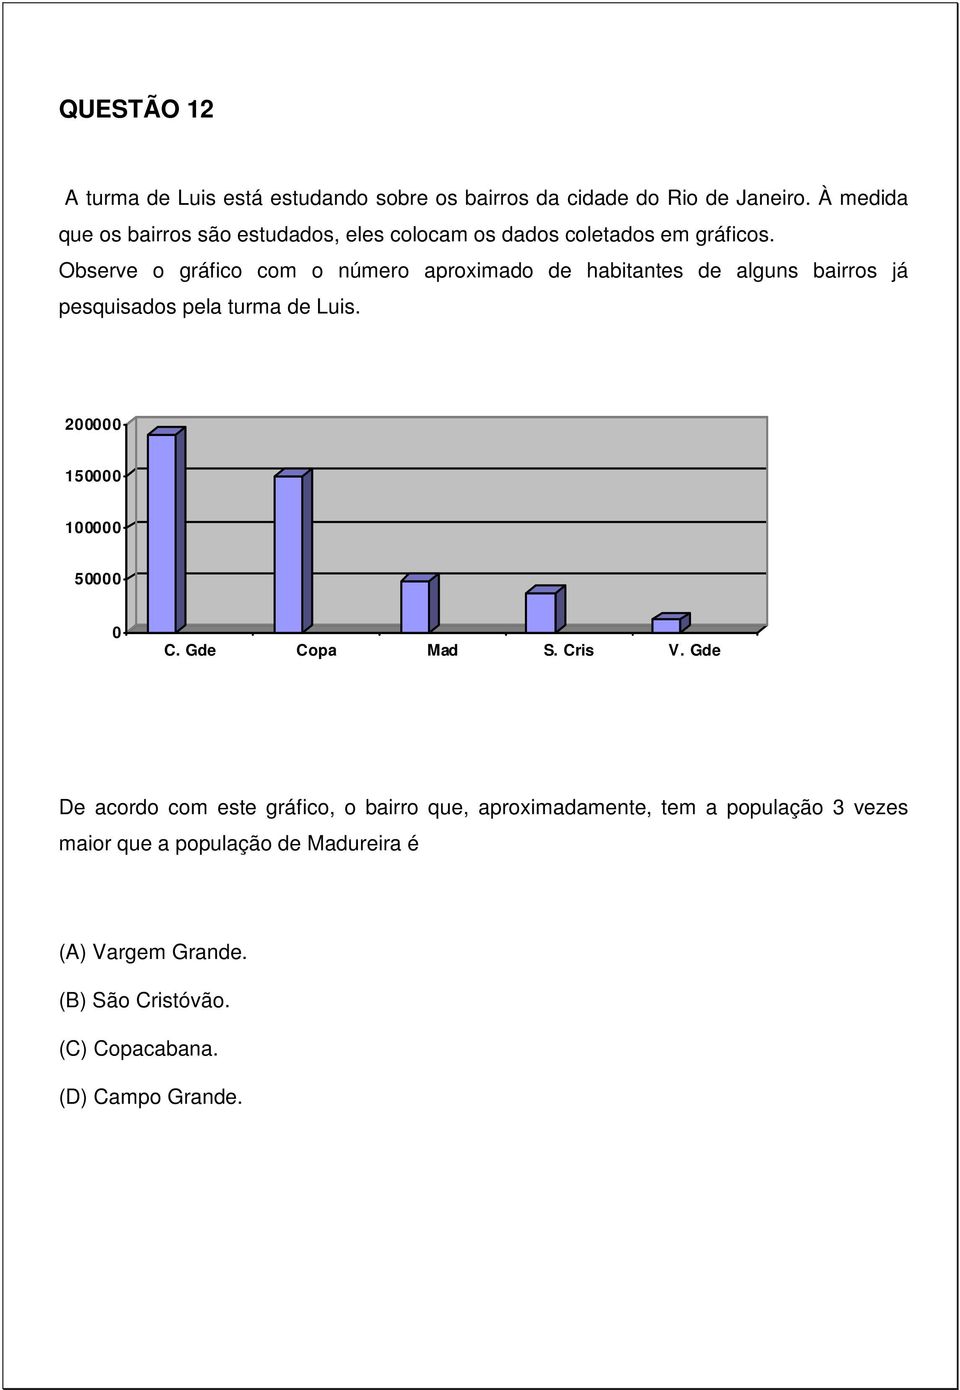 Observe o gráfico com o número aproximado de habitantes de alguns bairros já pesquisados pela turma de Luis.